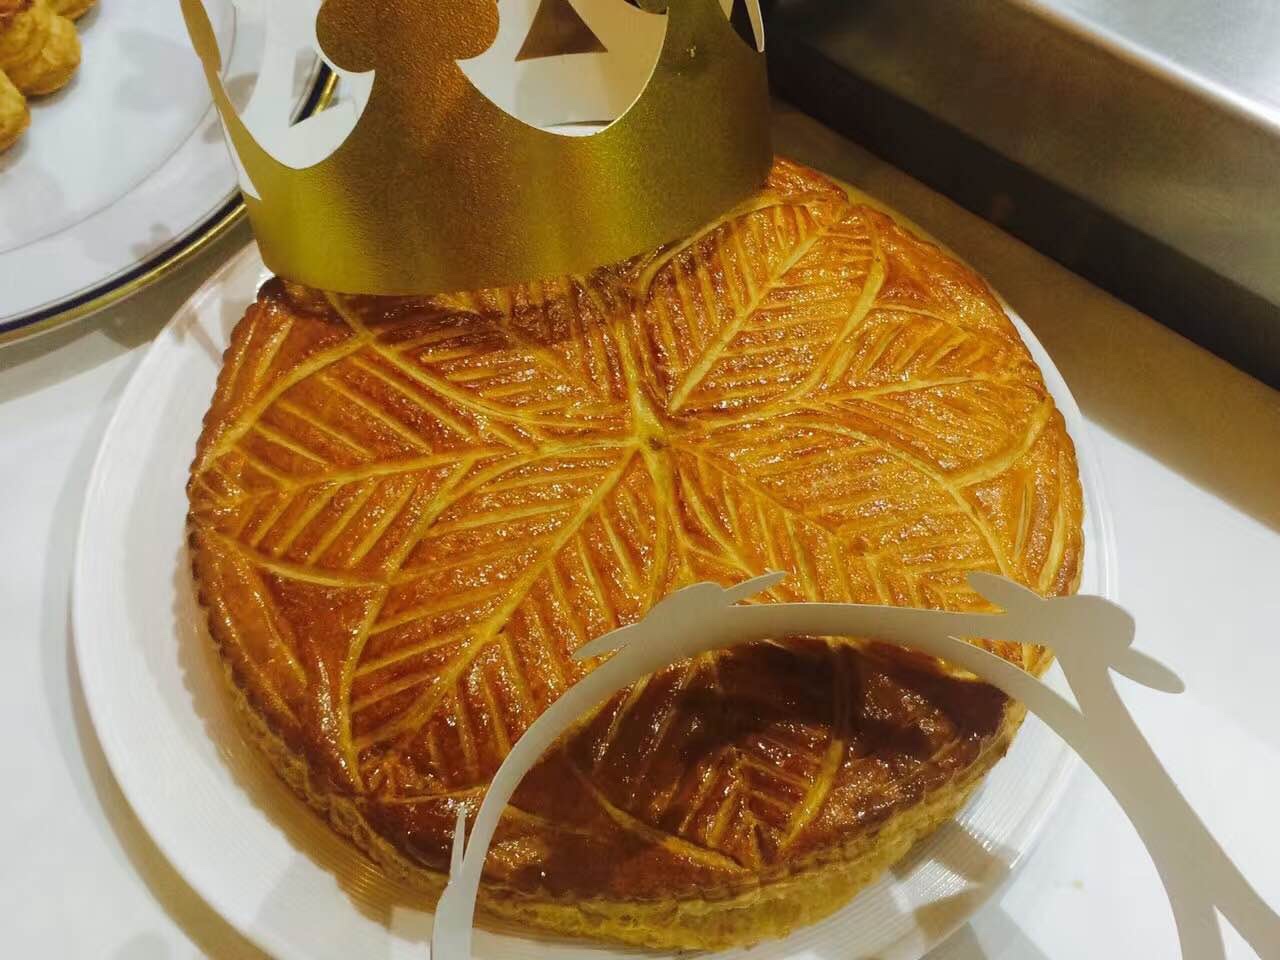 国王饼